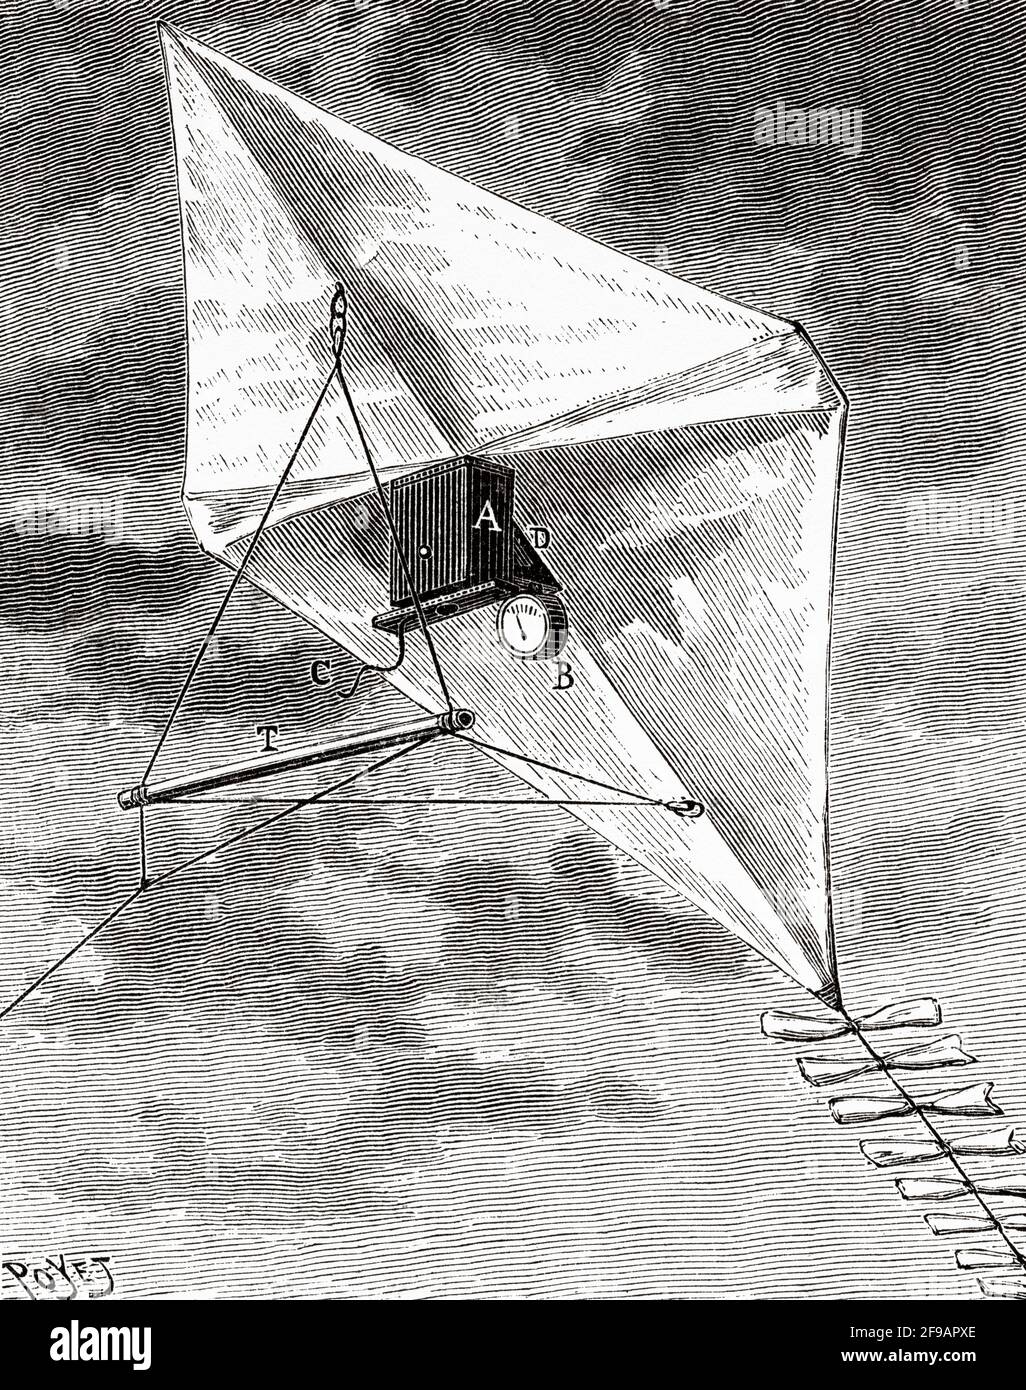 Photographie aérienne avec un cerf-volant à la fin du XIXe siècle. Ancienne illustration gravée du XIXe siècle de la nature 1889 Banque D'Images